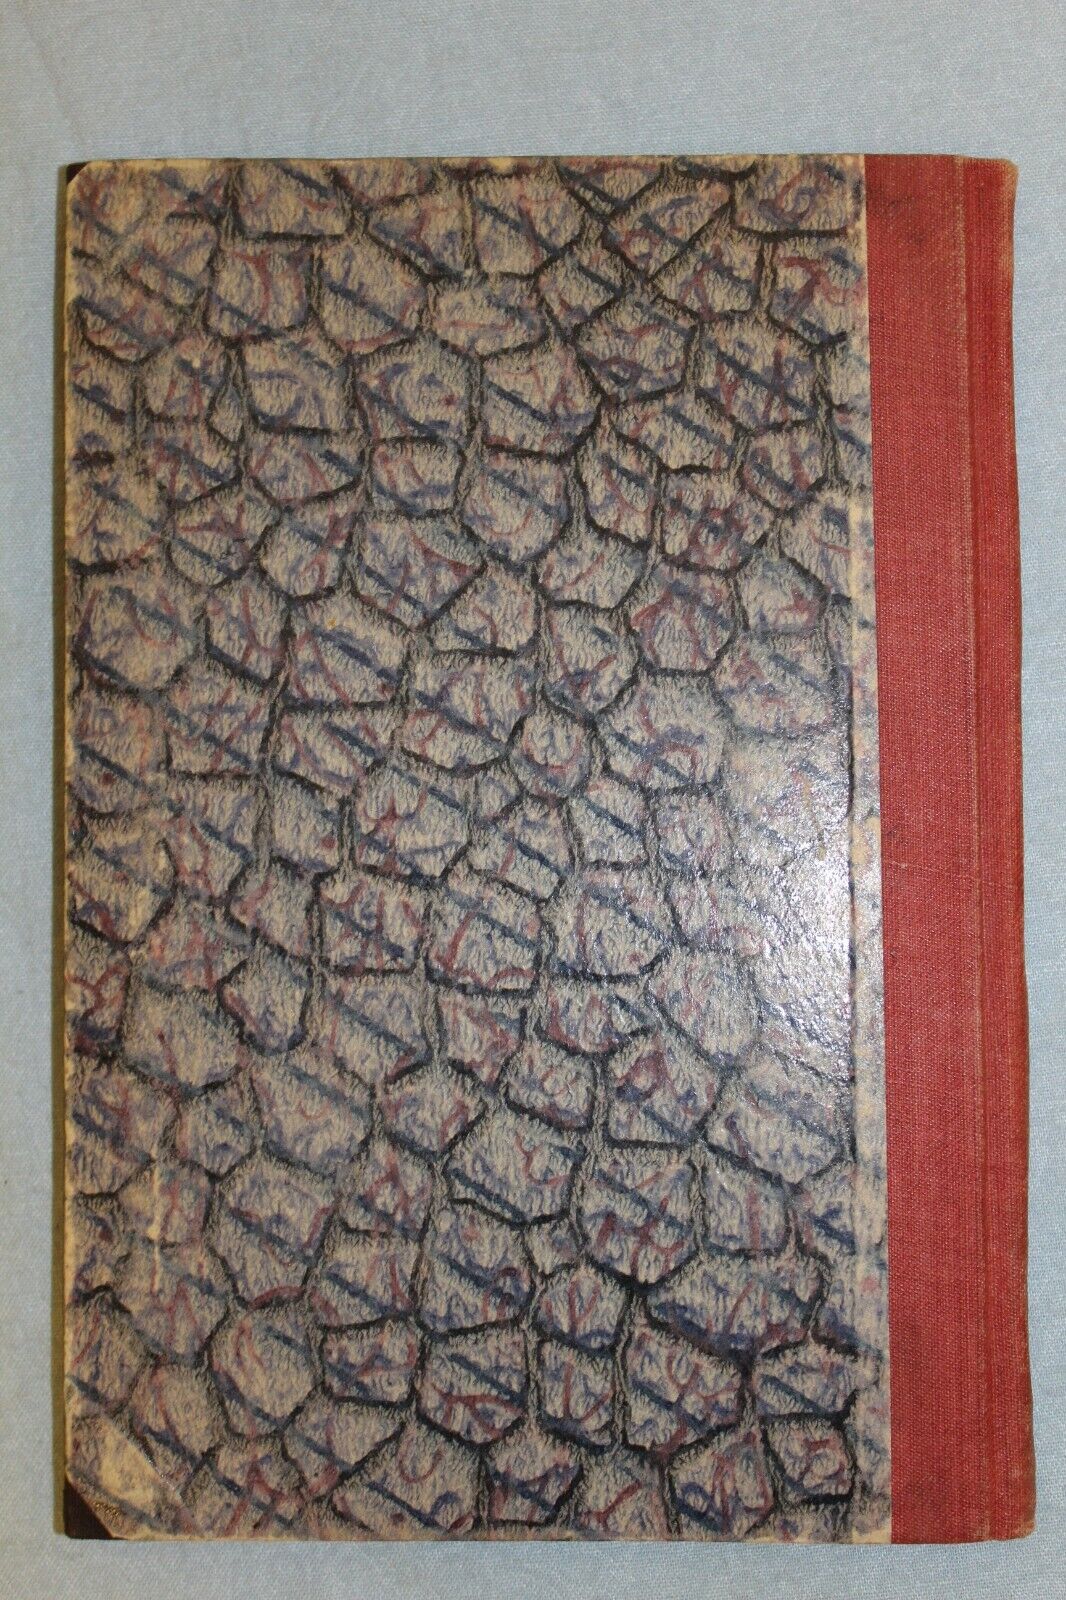 11311.German Chess Book: Die Wiener Partie Eine Schach-Theoretische.1893